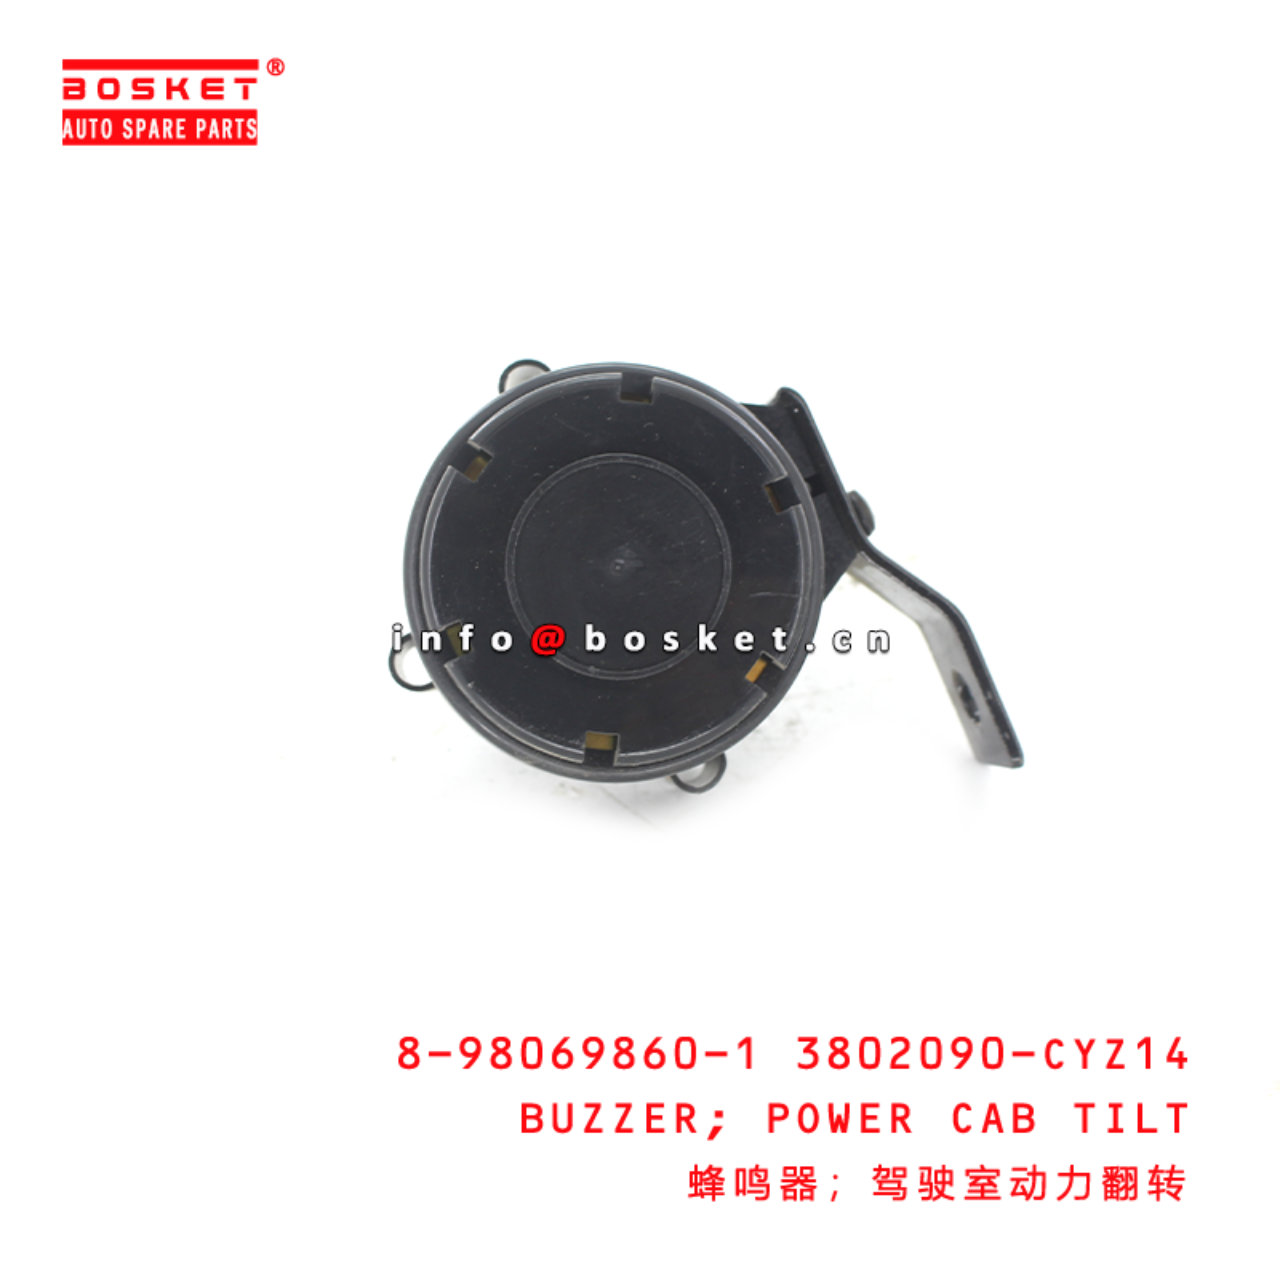 8-98069860-1 3802090-CYZ14 Power Cab Tilt Buzzer Suitable for 